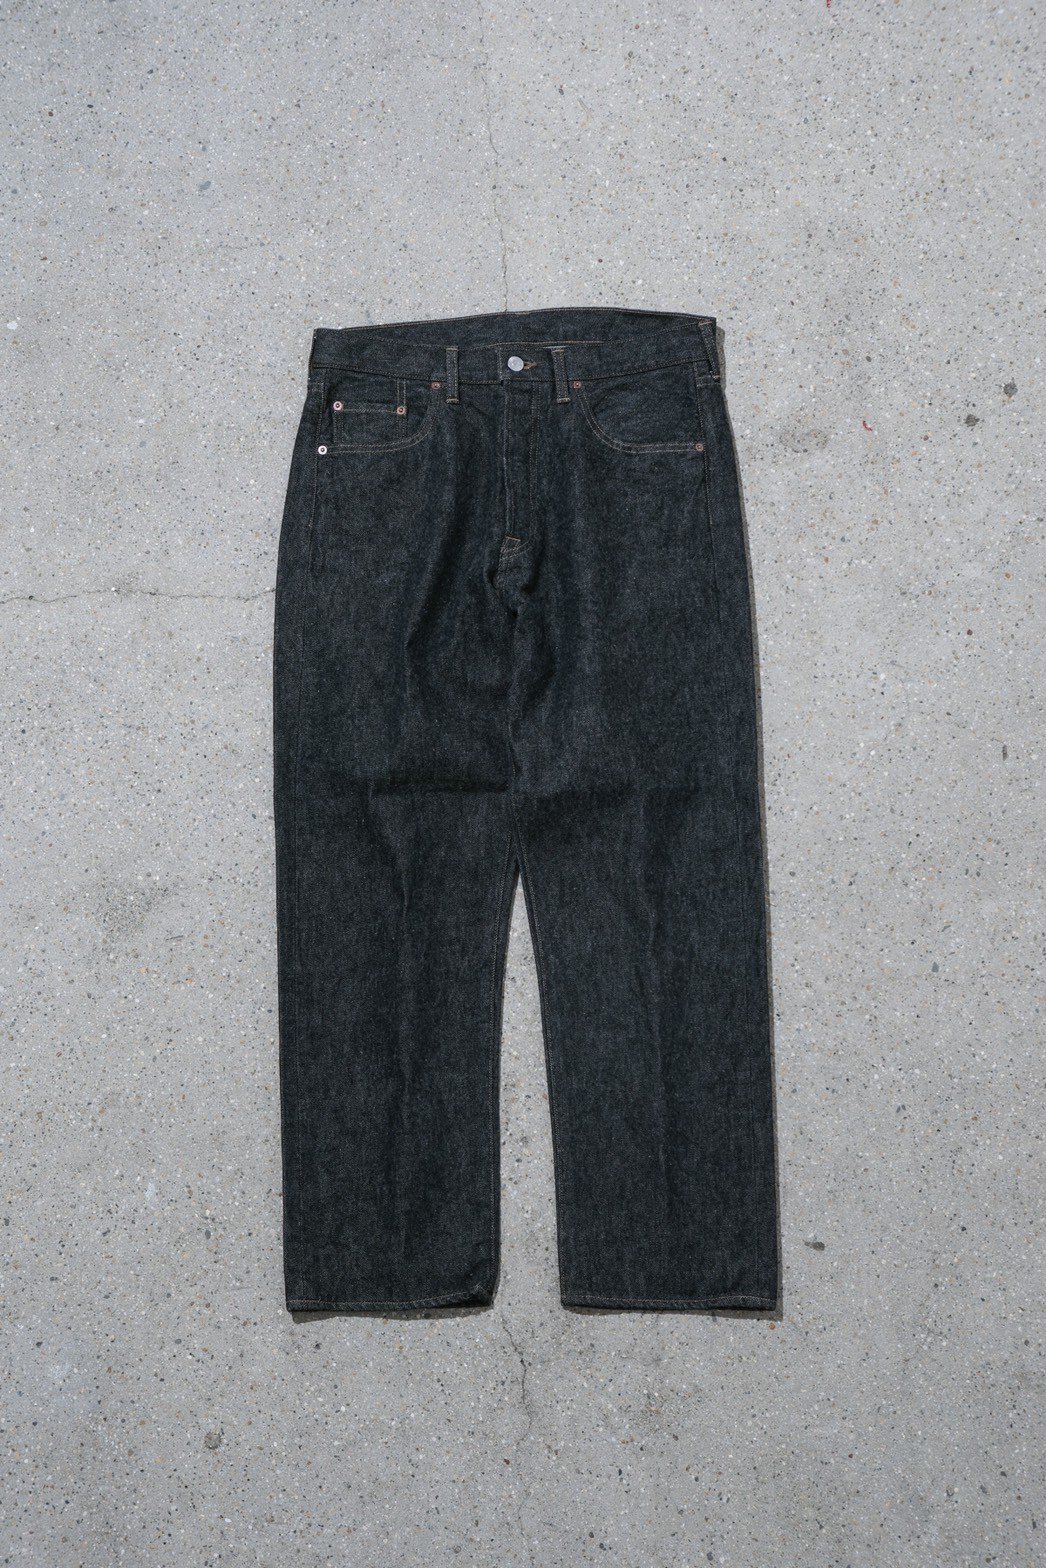 A.PRESSE / Black Washed Denim Pants